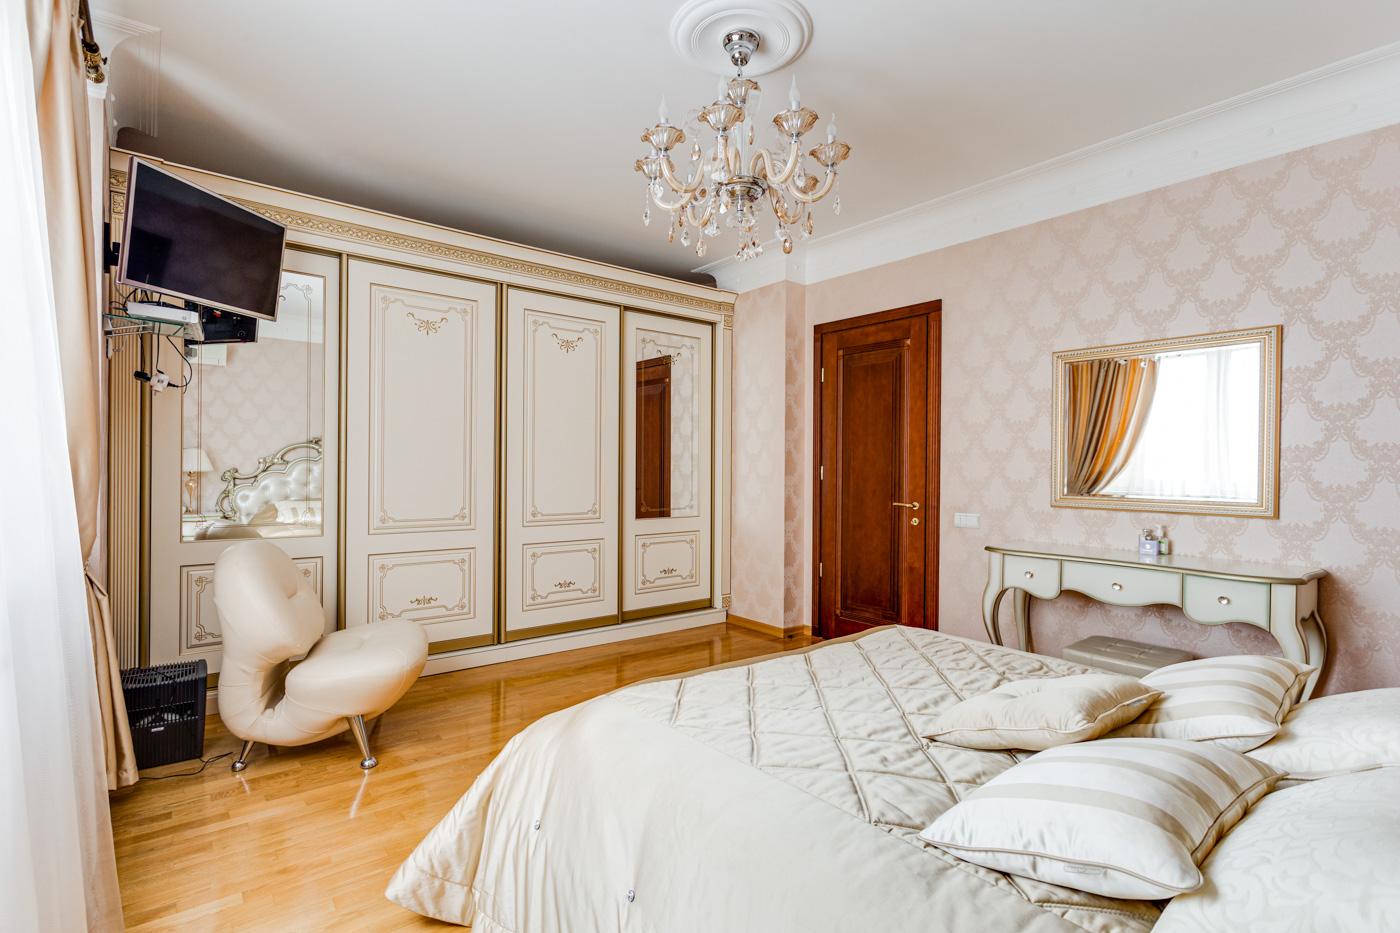 Купить квартиру до 1000000 рублей. Квартира за 160 000 000. Купить четырехкомнатную квартиру в Москве на профмоюзной140. Продажа квартир в районе Donaustadt.